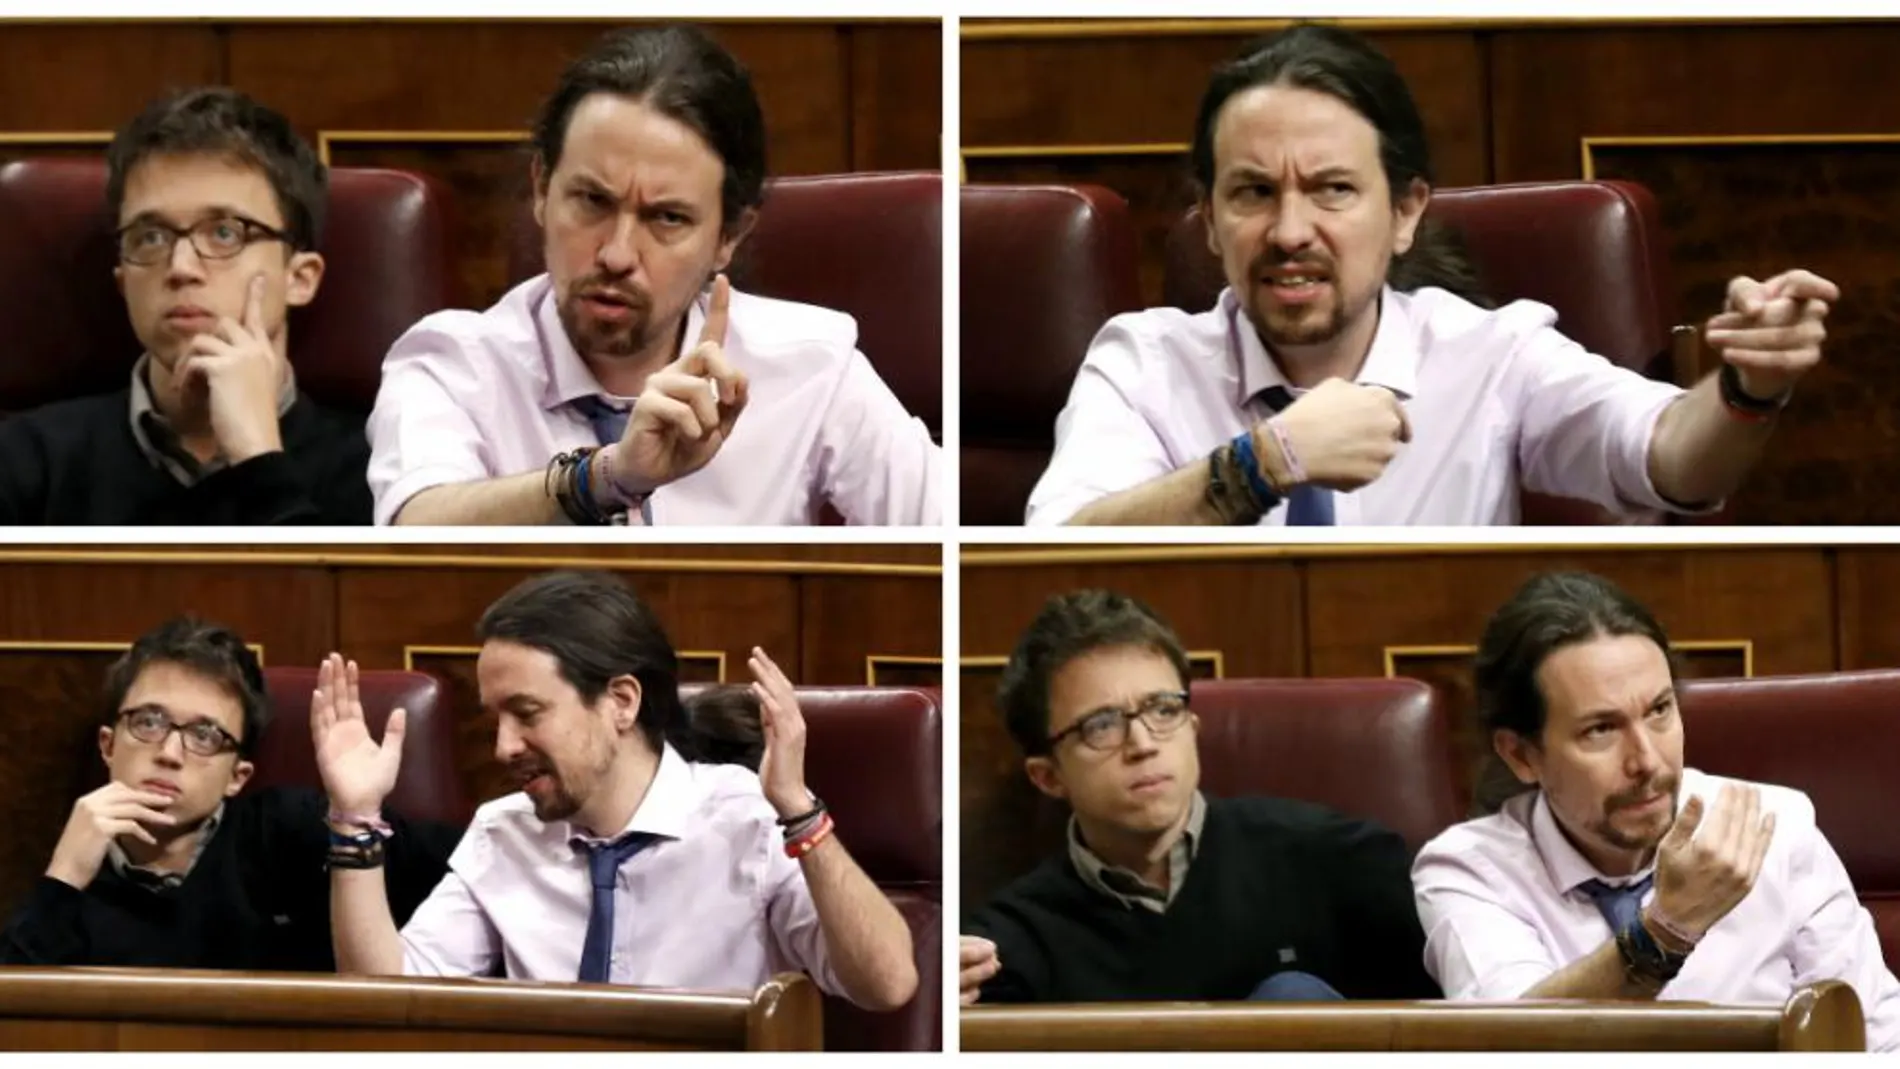 Pablo Iglesias gesticula durante el rifirrafe con un diputado del PP.